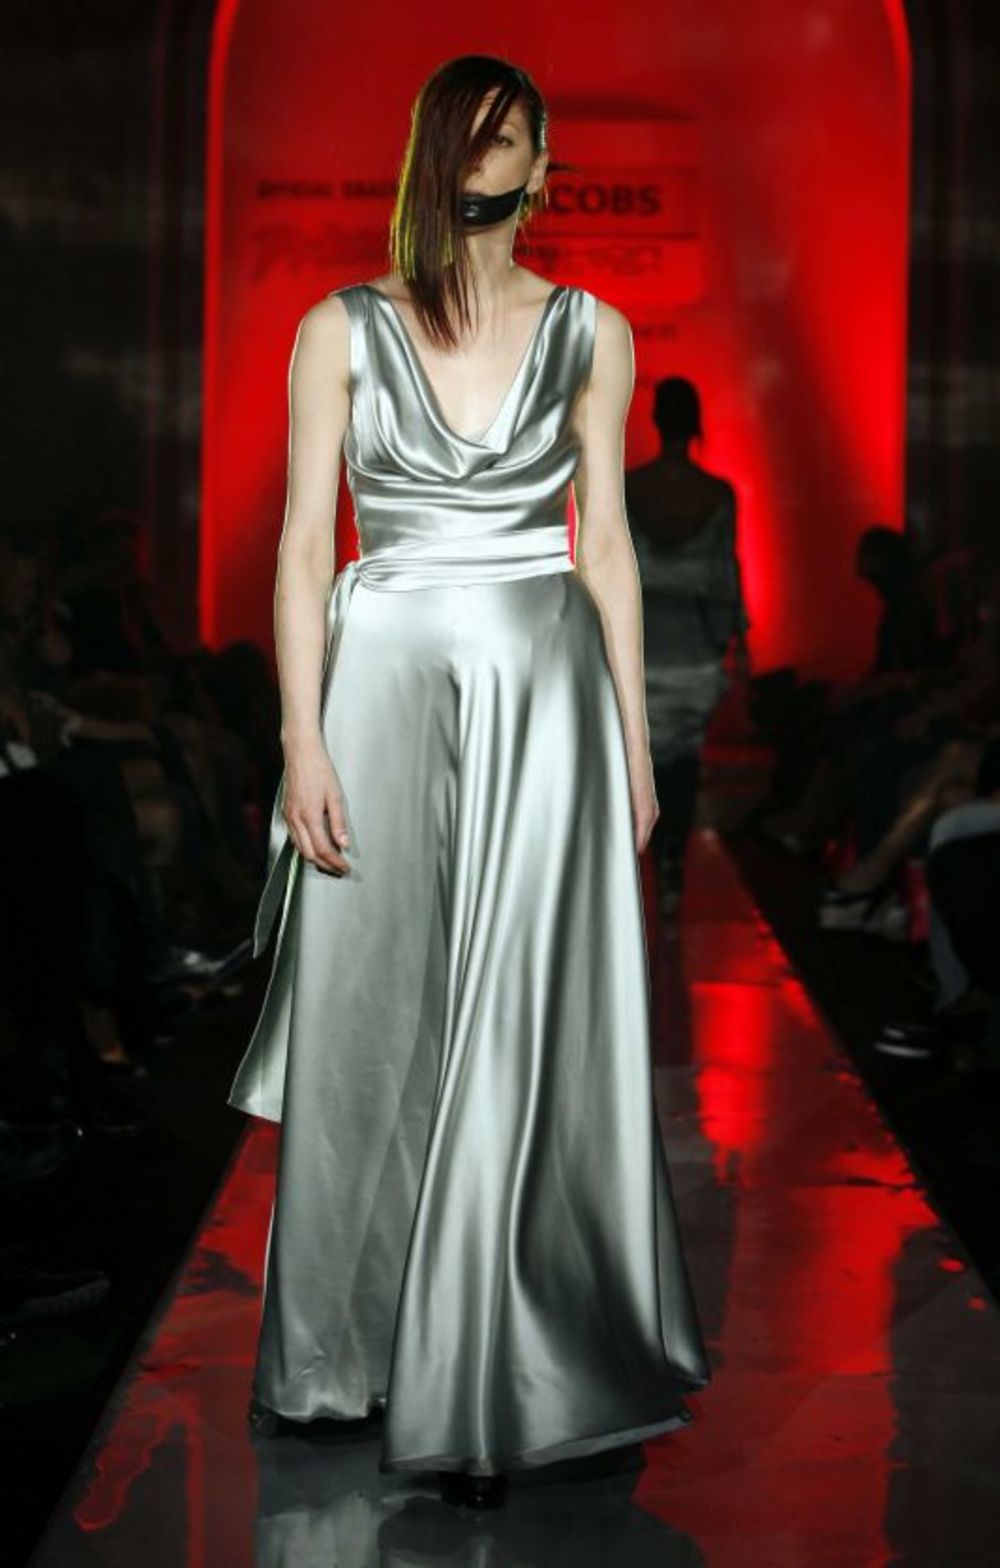 Modna dizajnerka Dragana Došen prikazala je 12. oktobra u domu Garde na Jacobs Fashion Selectionu kolekciju inspirisanu francuskim novim talasom, koji karakterišu klasične forme